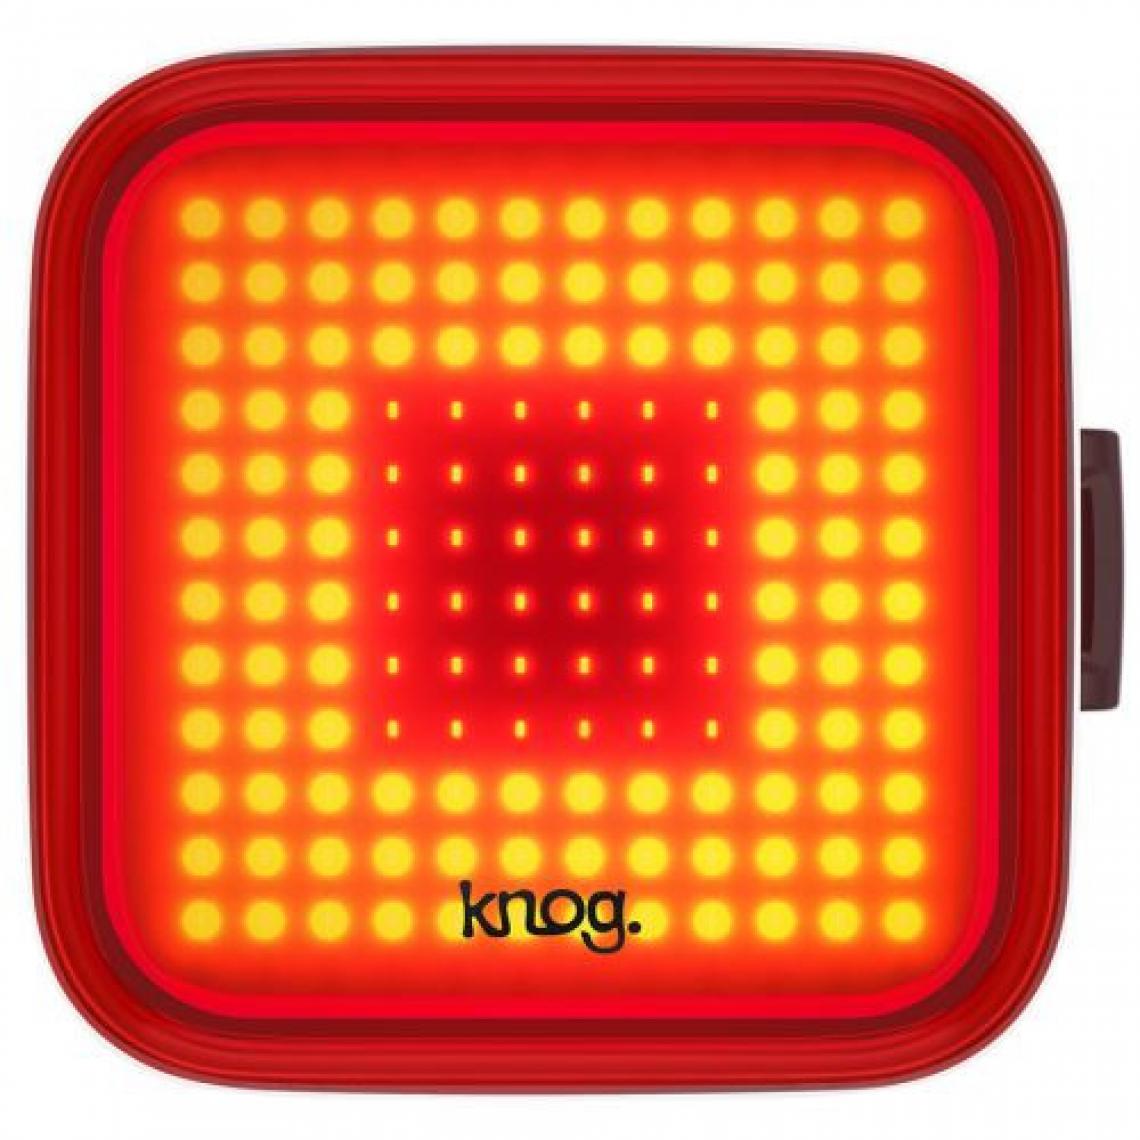 Knog - Eclairage vélo Knog Blinder Square Rear - Accessoires Mobilité électrique